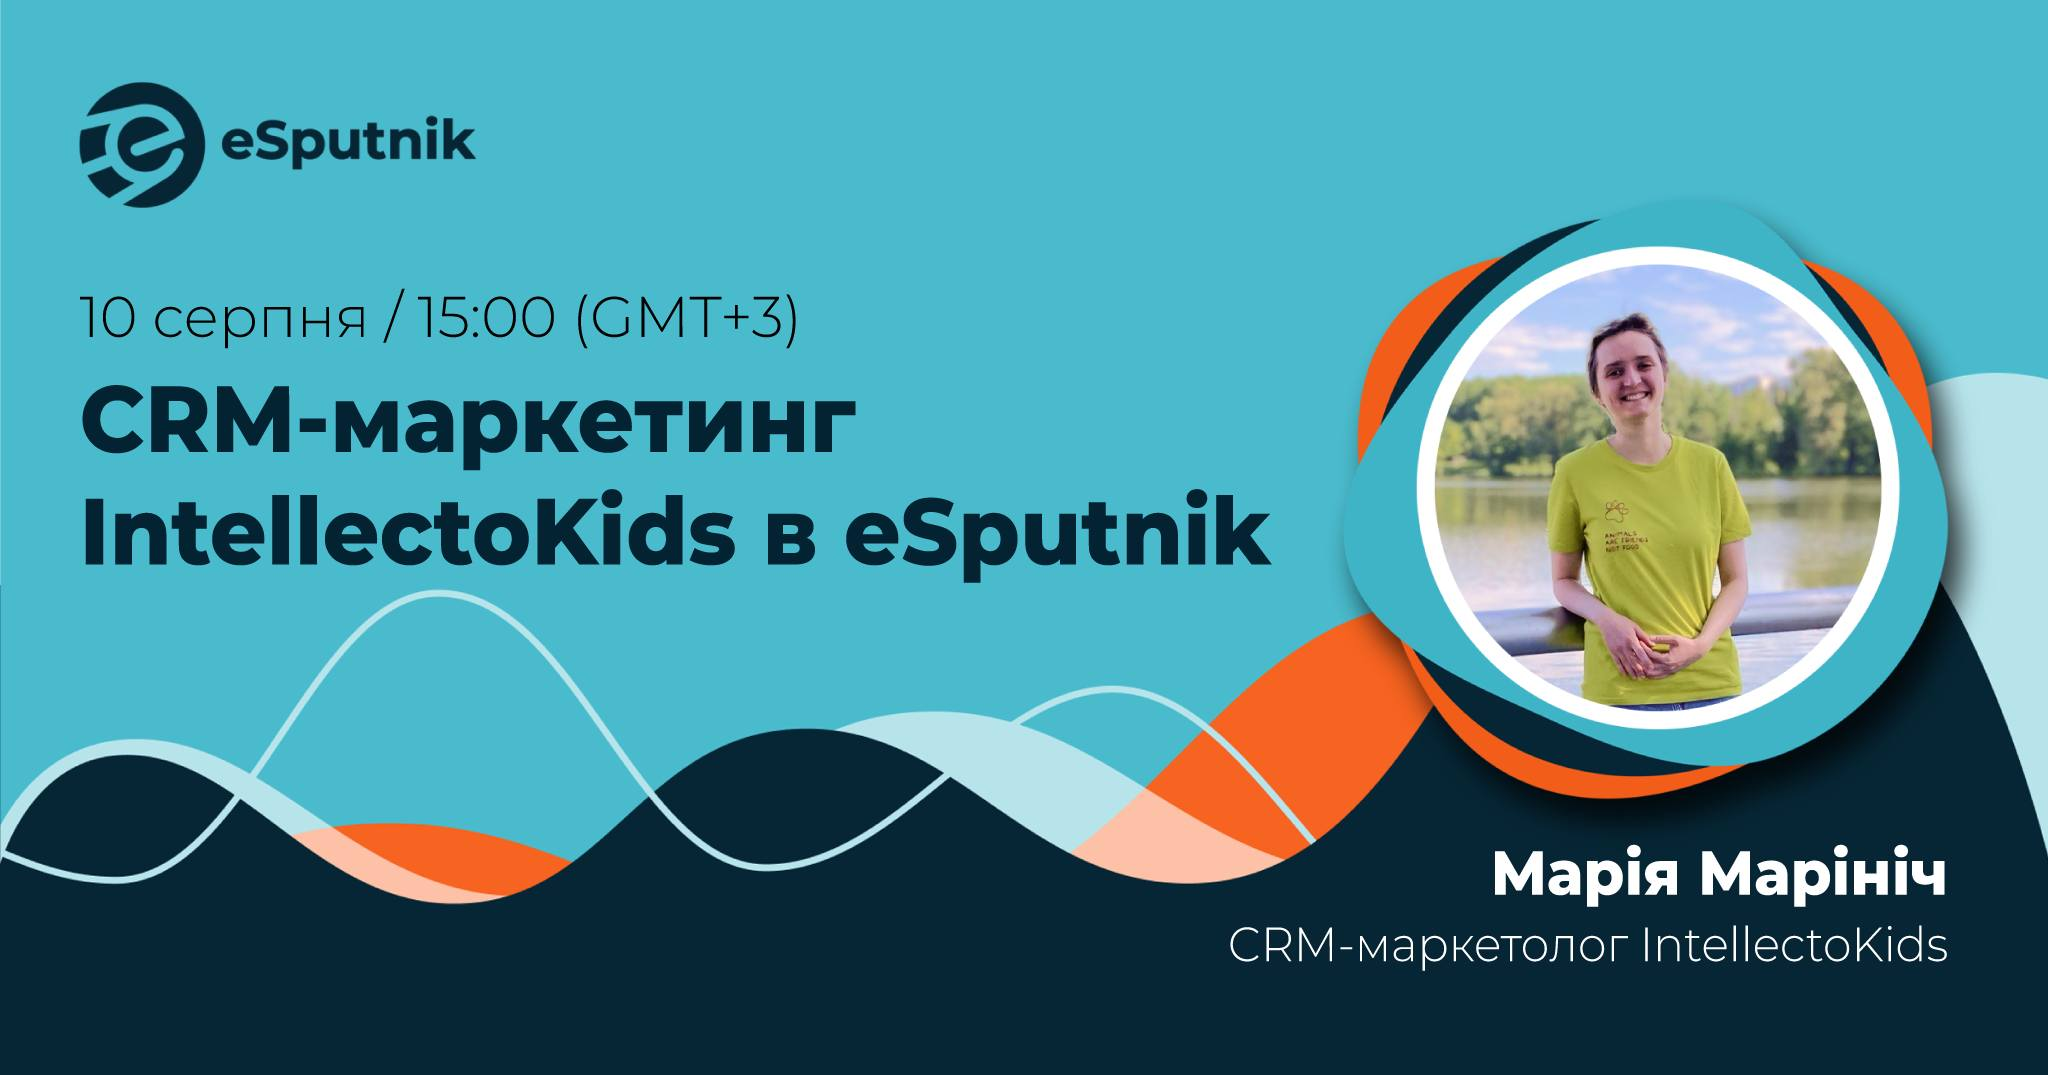 CRM-маркетинг IntellectoKids в eSputnik  